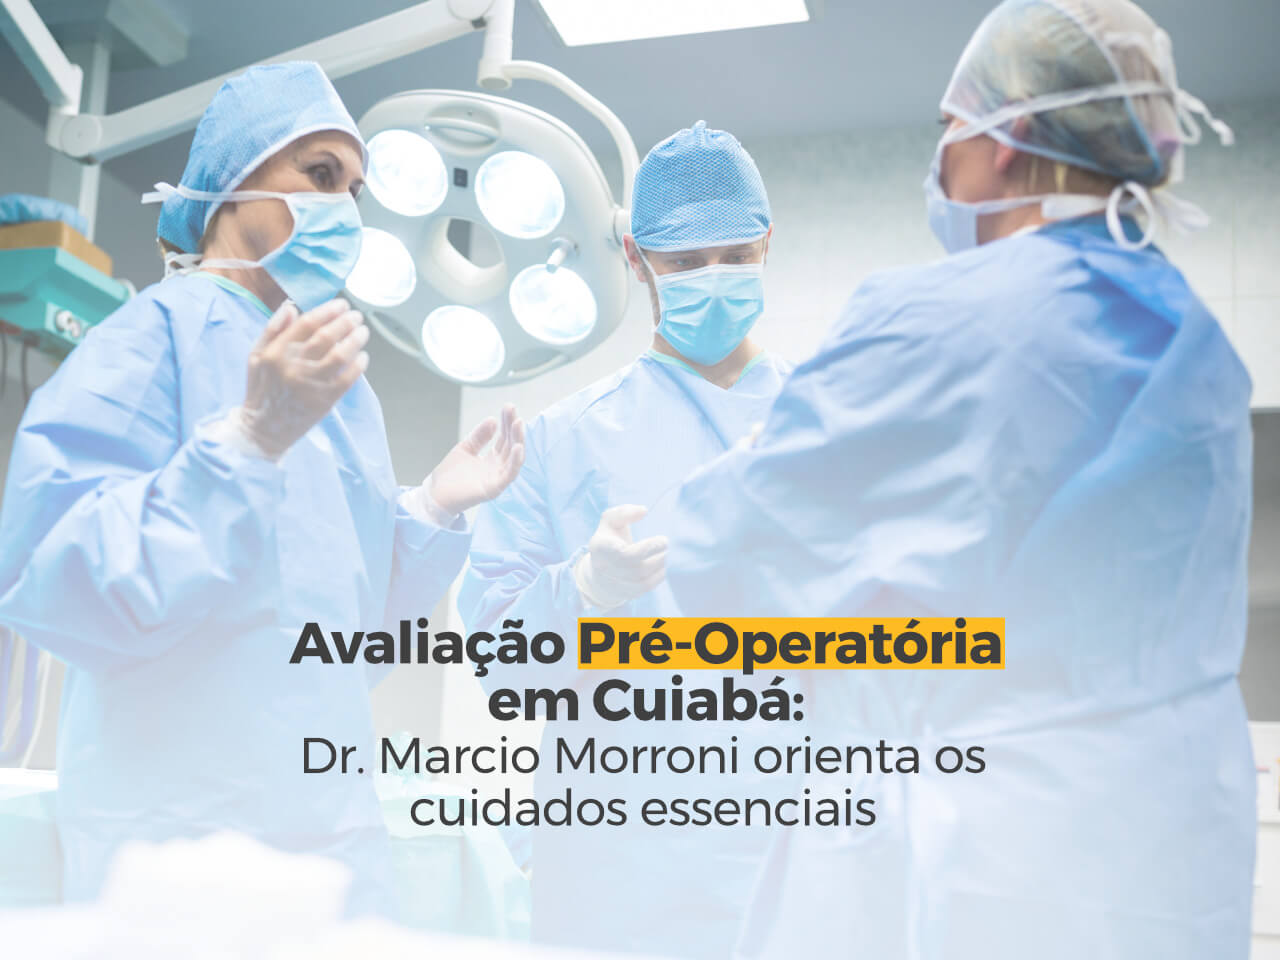 Avaliação Pré-Operatória em Cuiabá: Dr. Marcio Morroni Orienta os Cuidados Essenciais